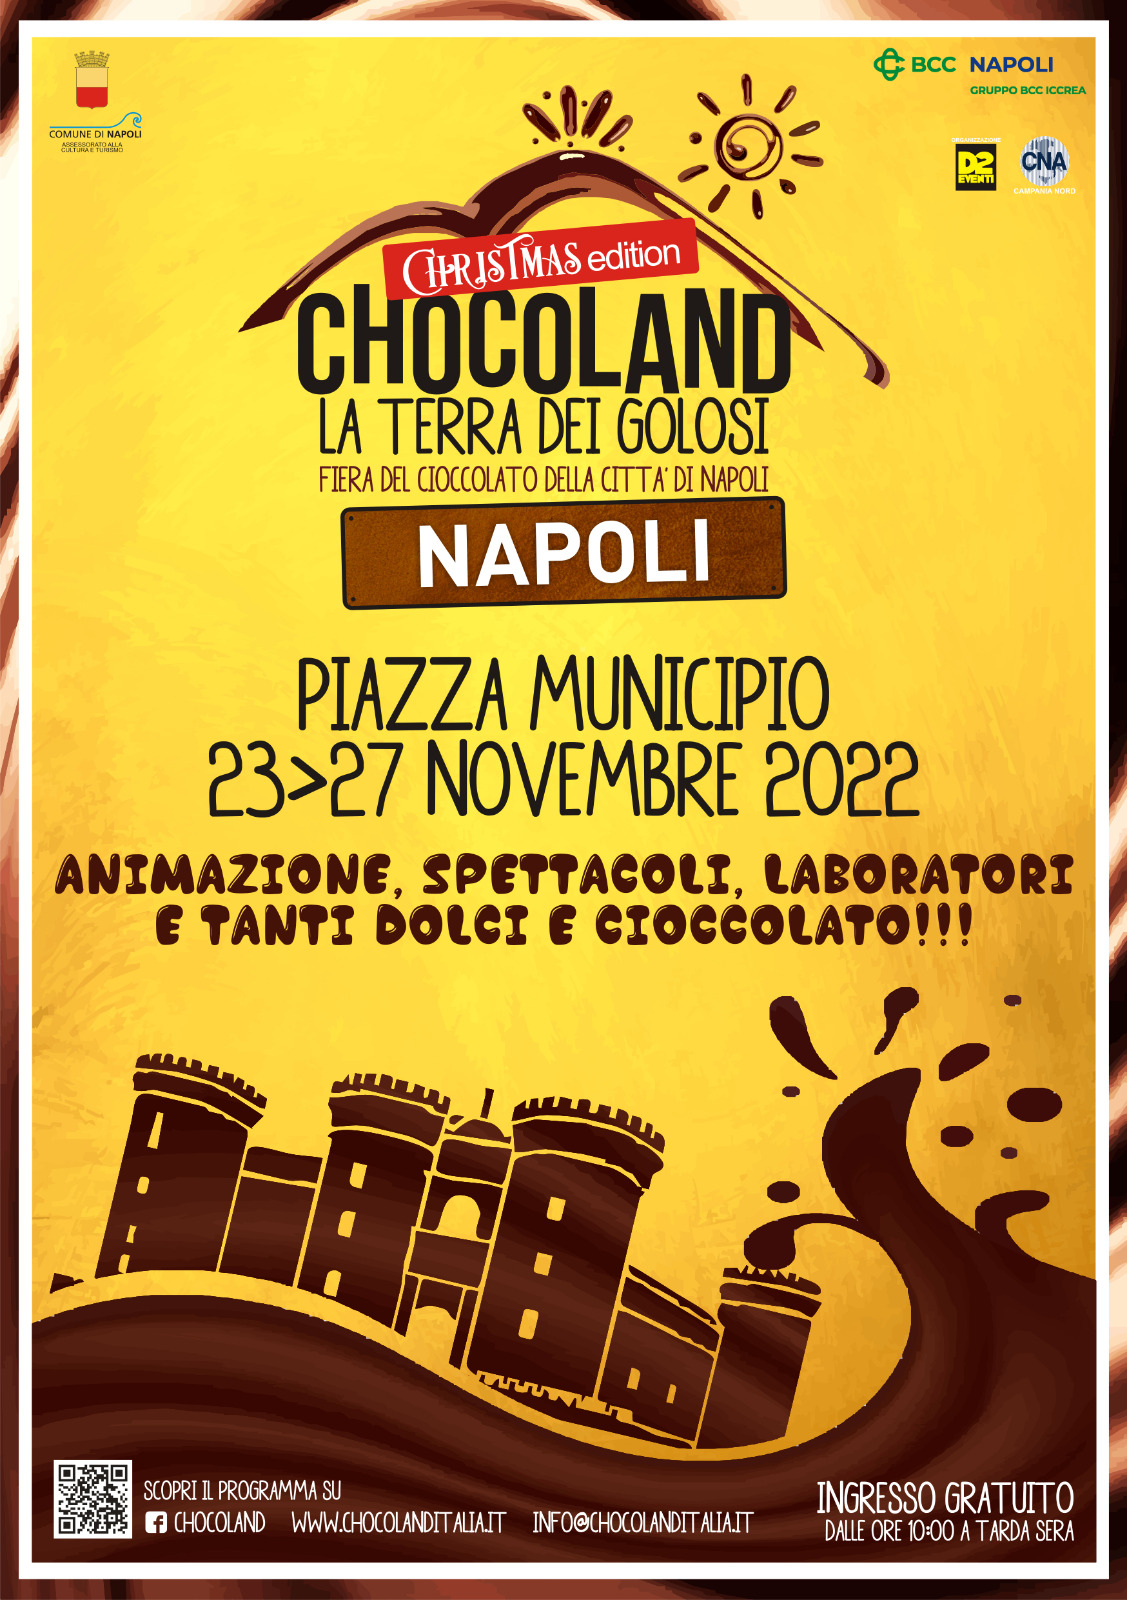 Chocoland Napoli – dal 23 al 27 novembre 2022